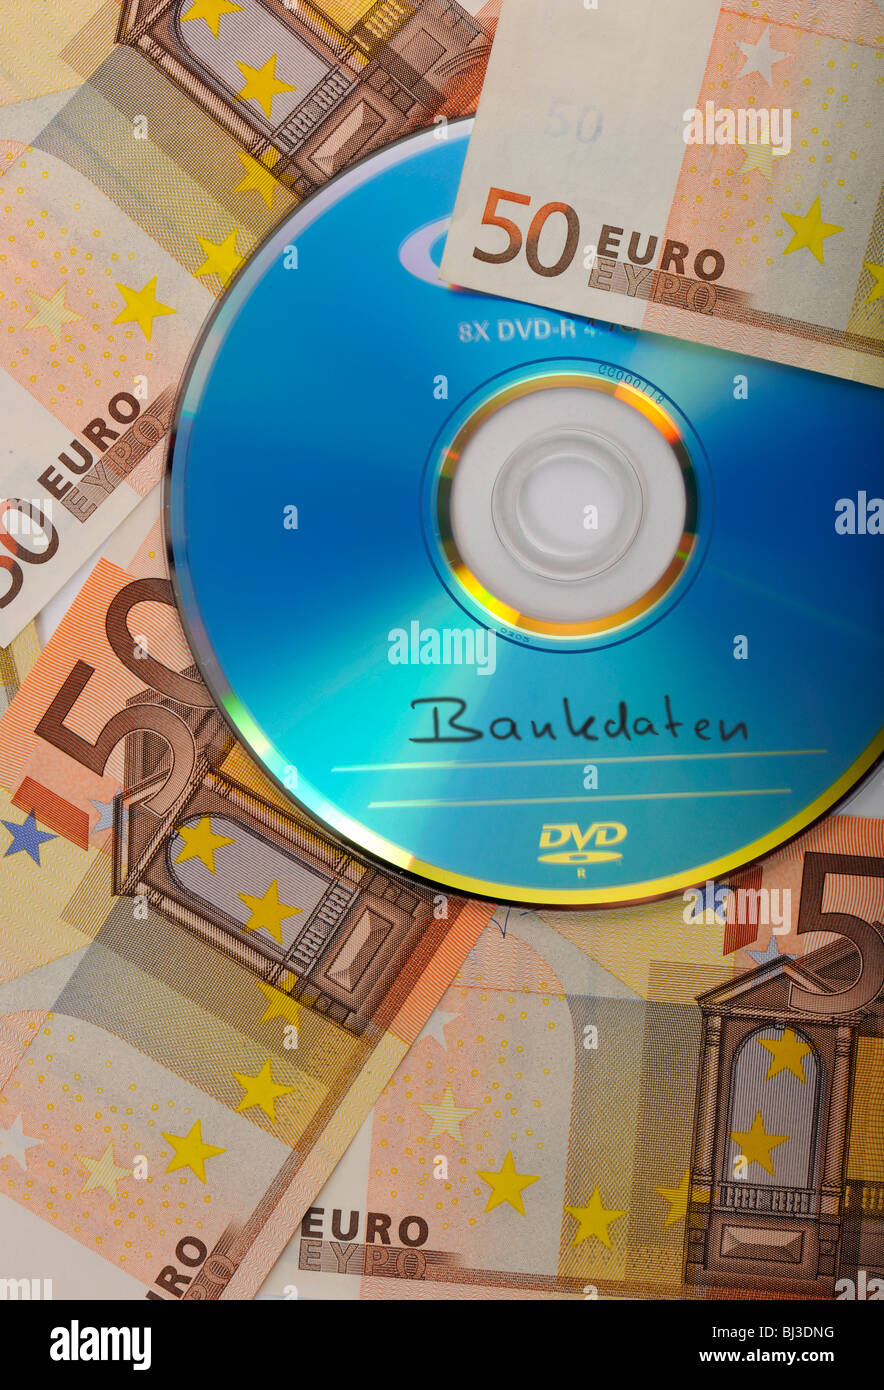 DVD, CD, euro bills, immagine simbolica per l'acquisto di documenti bancari, evasione fiscale, privacy Foto Stock